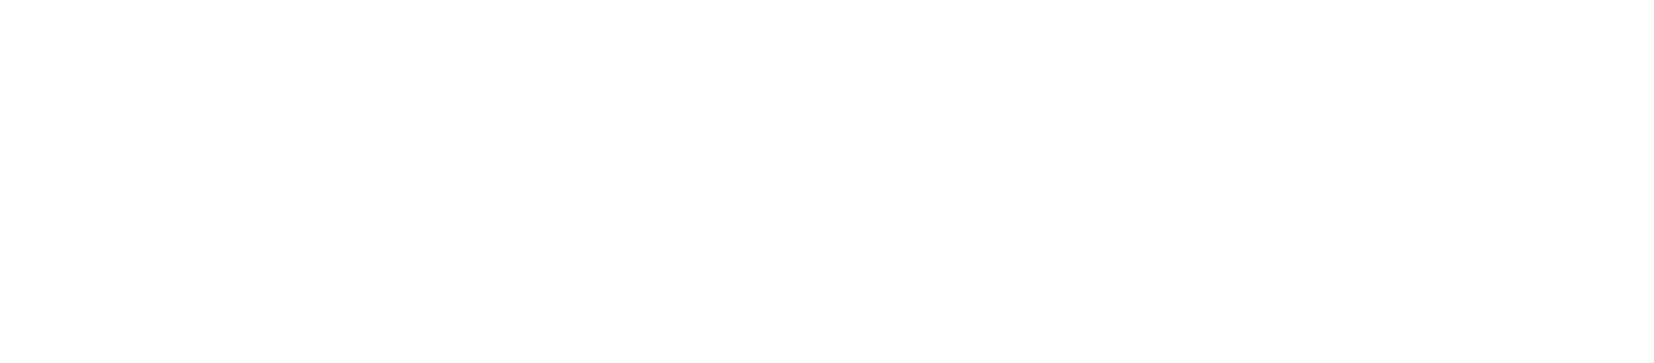 Logotipo Cluster branco